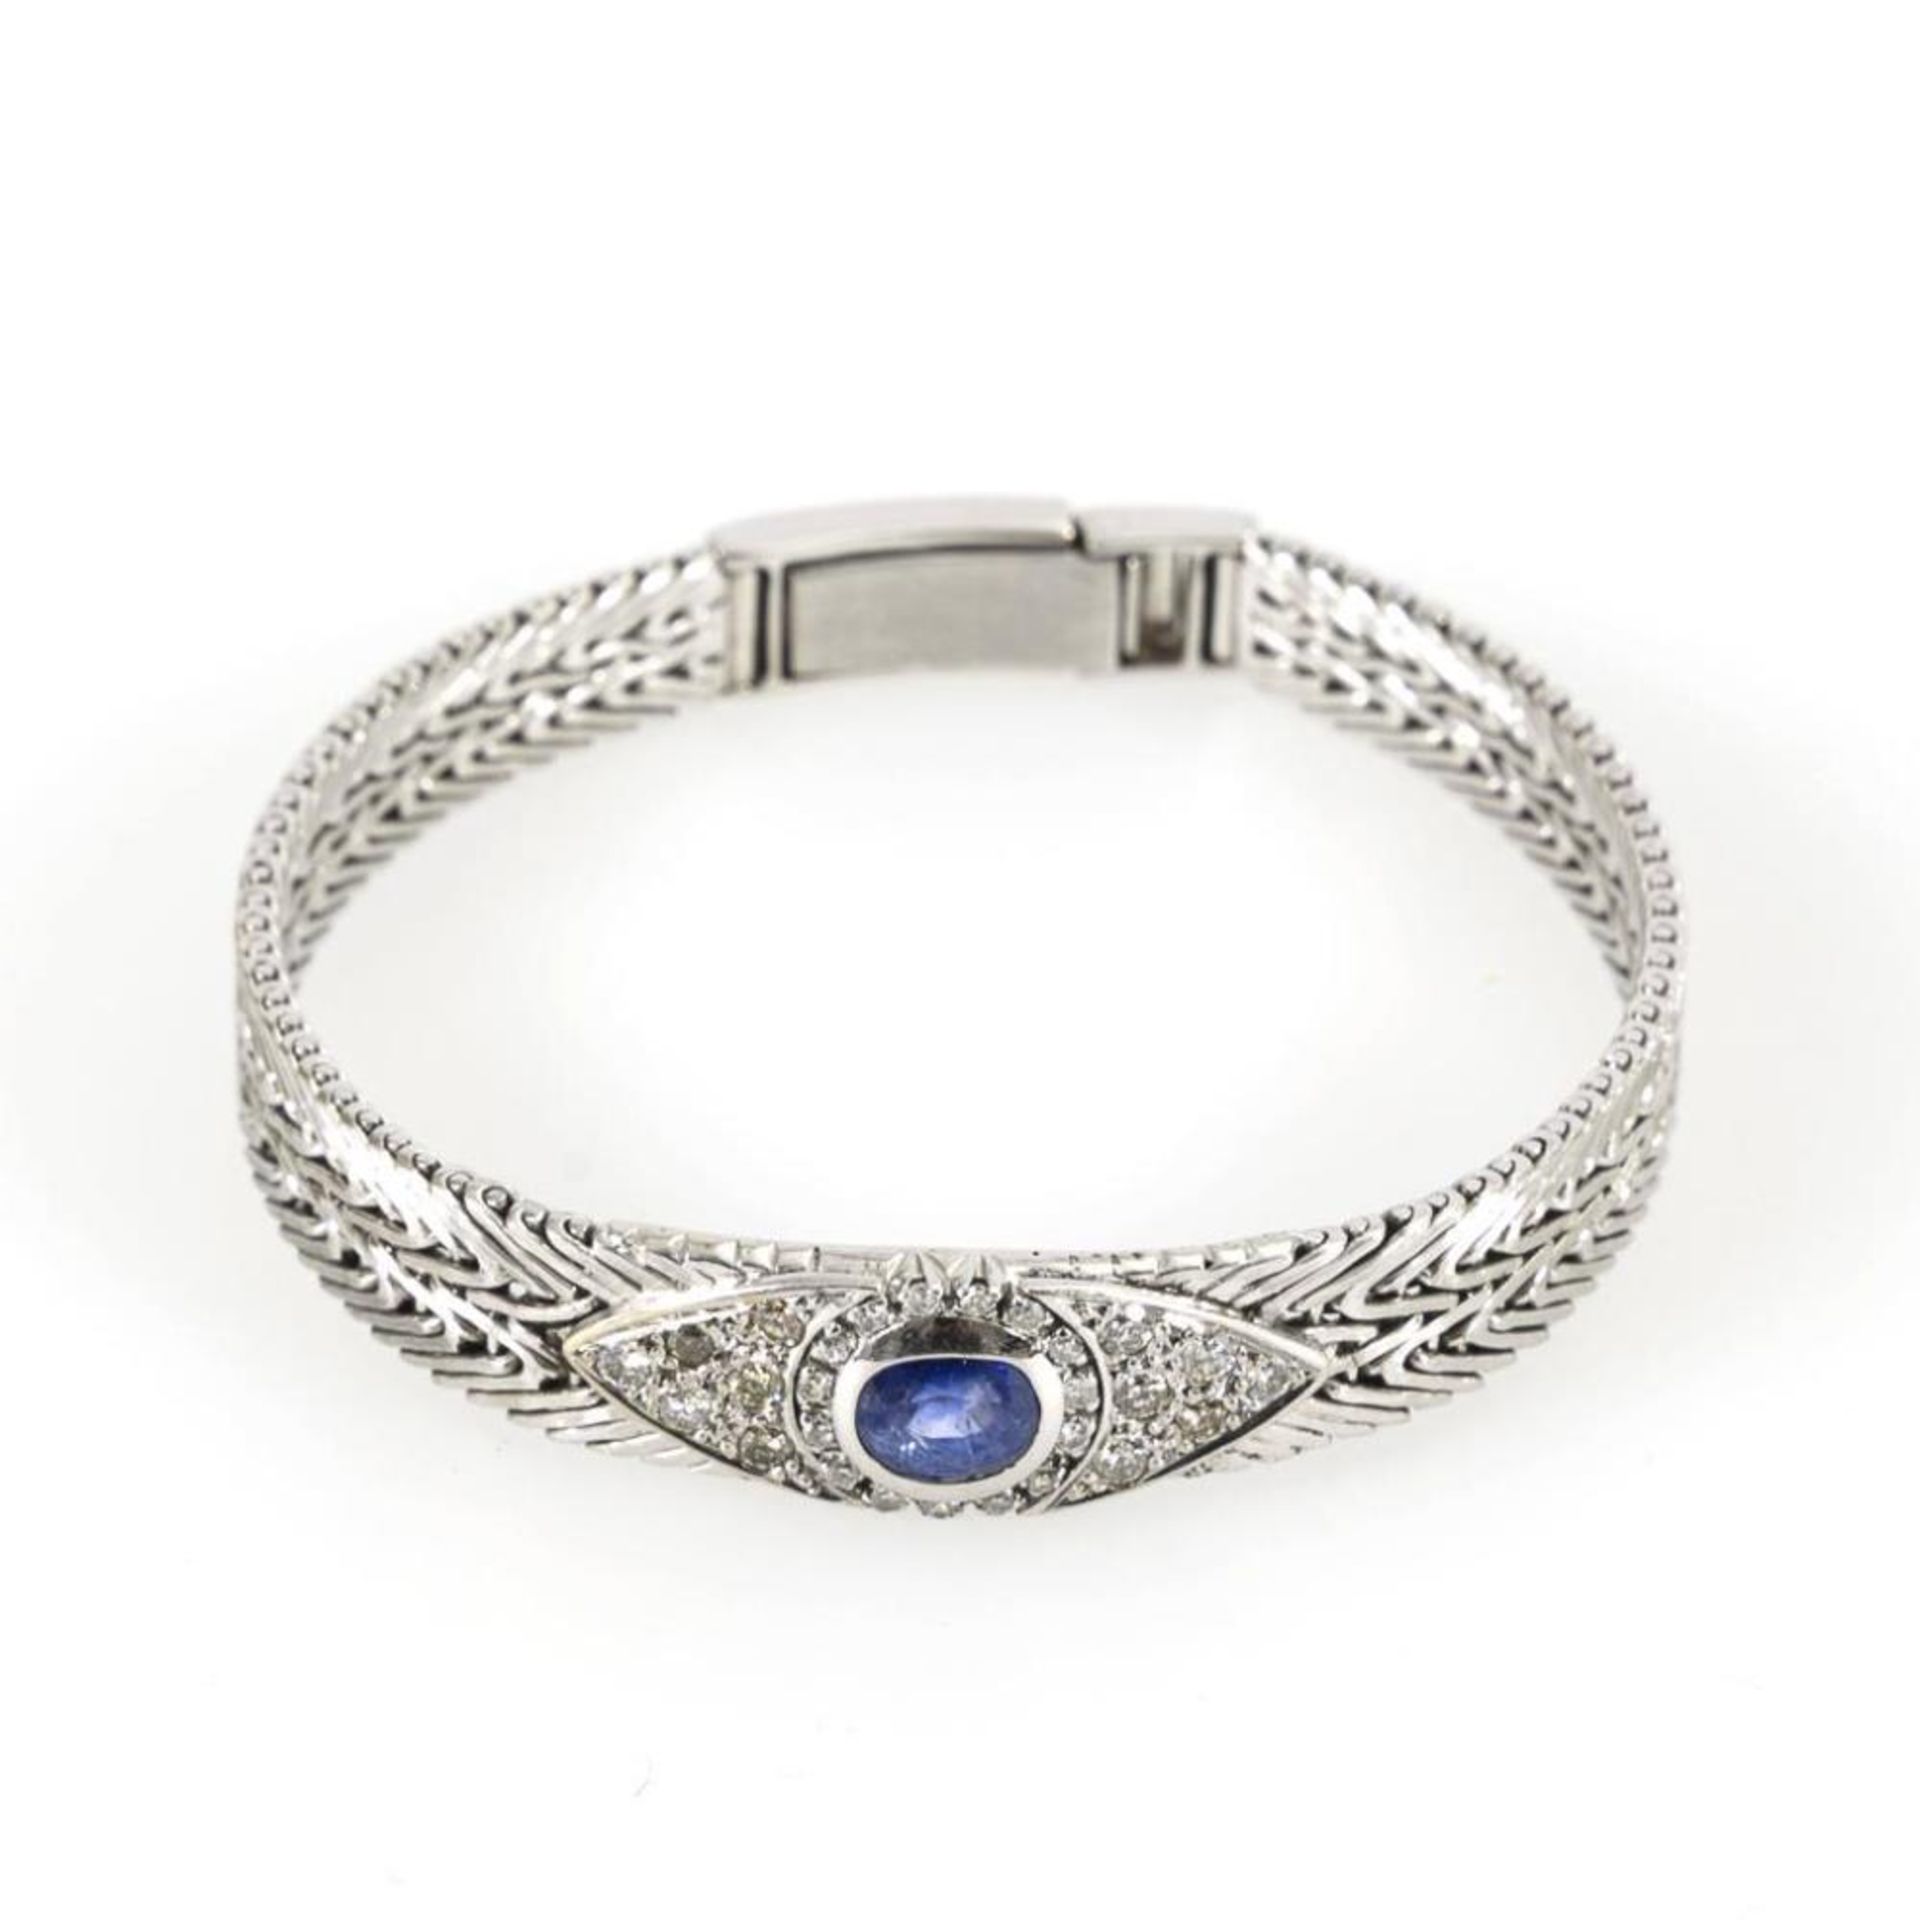 Armband mit Saphir, Brillanten und Diamanten. - Image 2 of 3